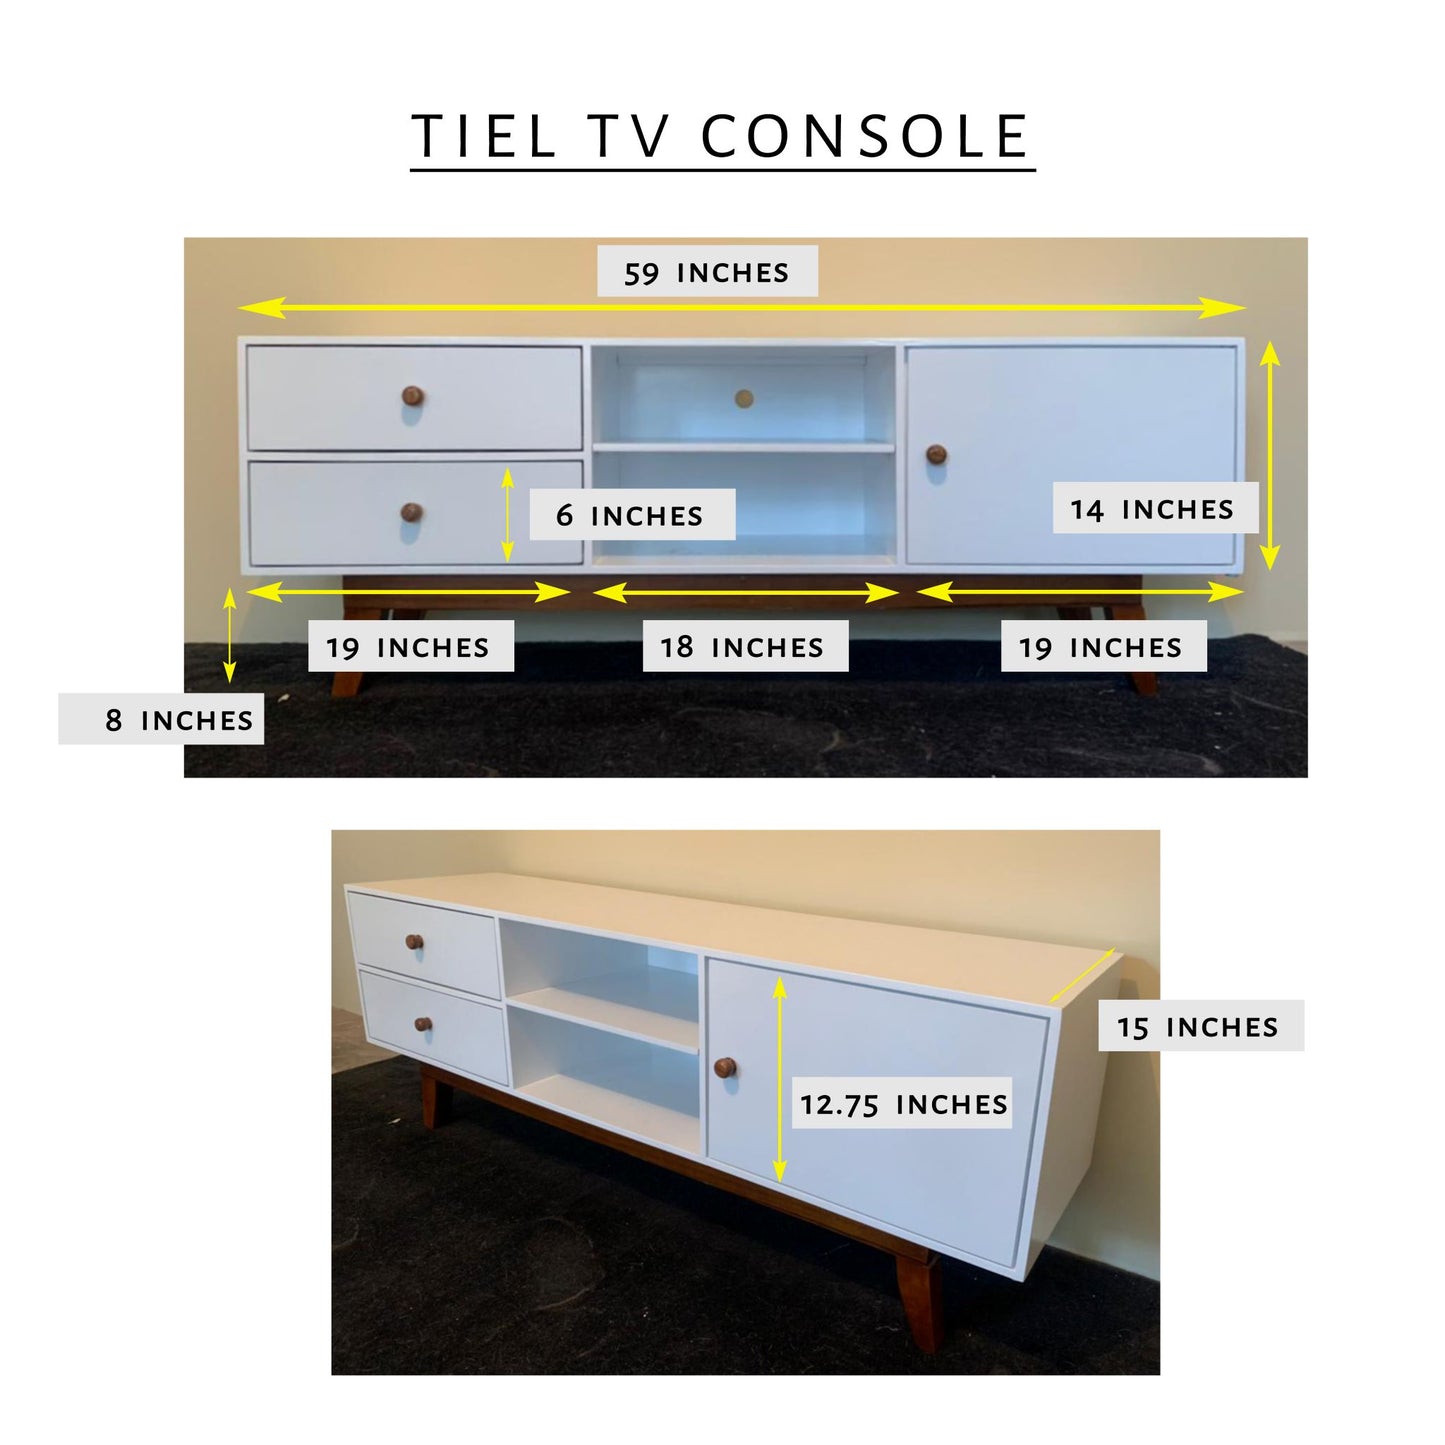 Tiel TV Console